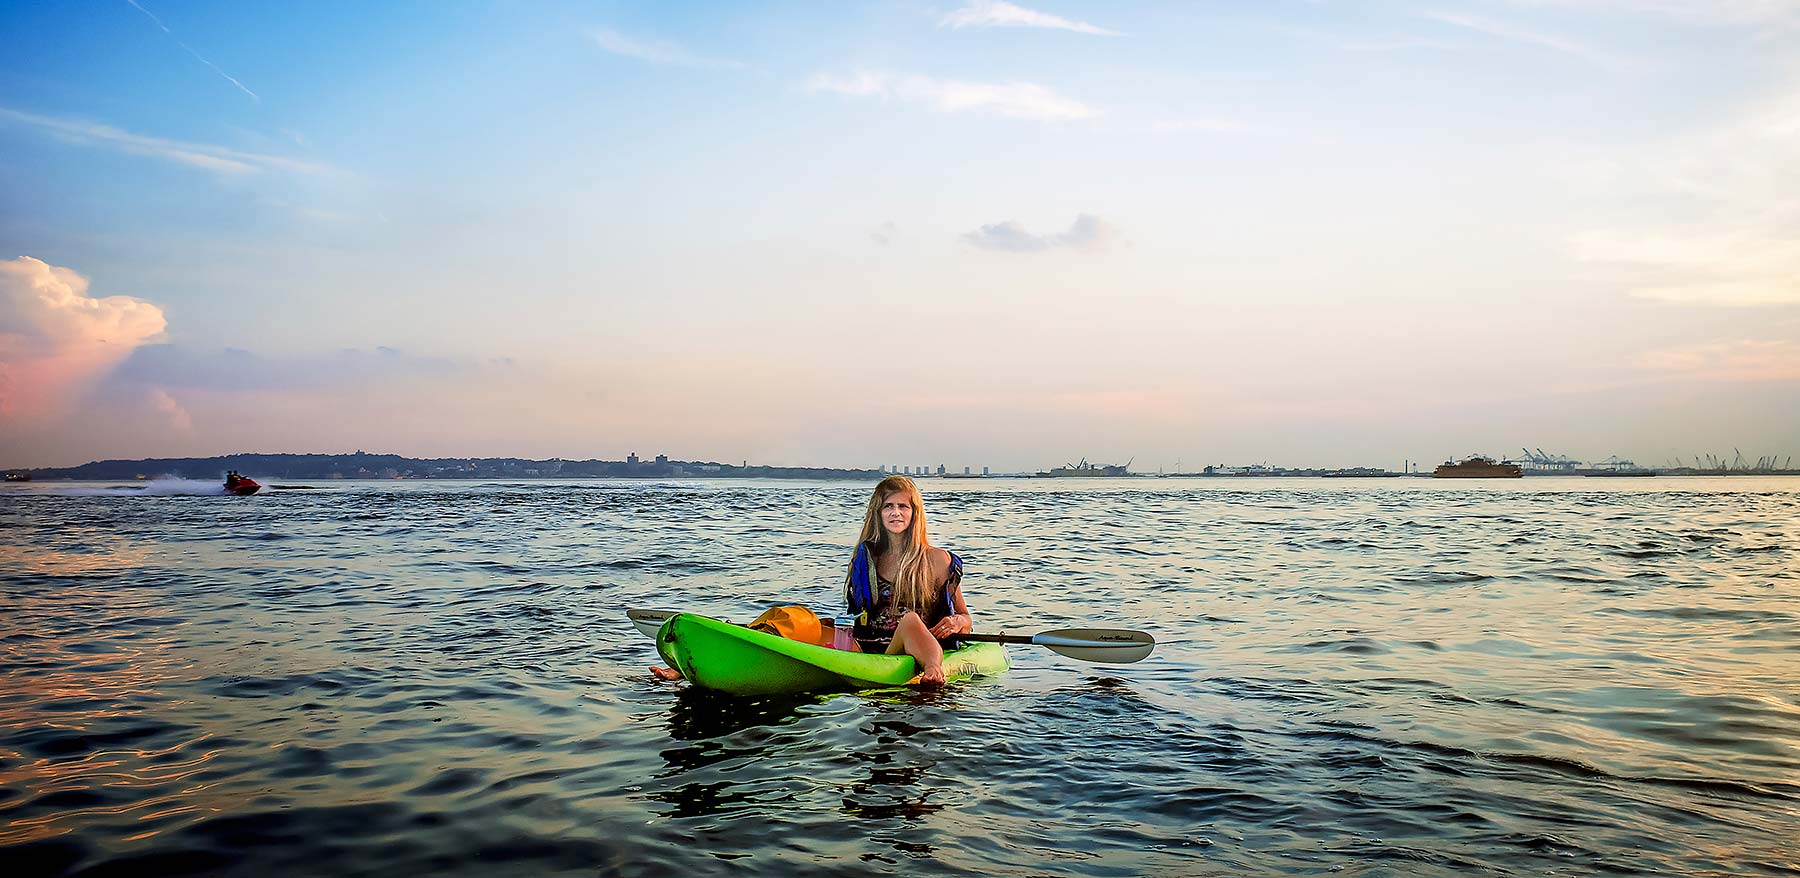 Red Hook Music Publicist Elizabeth Fruend on her Kayak in NY Harbor.